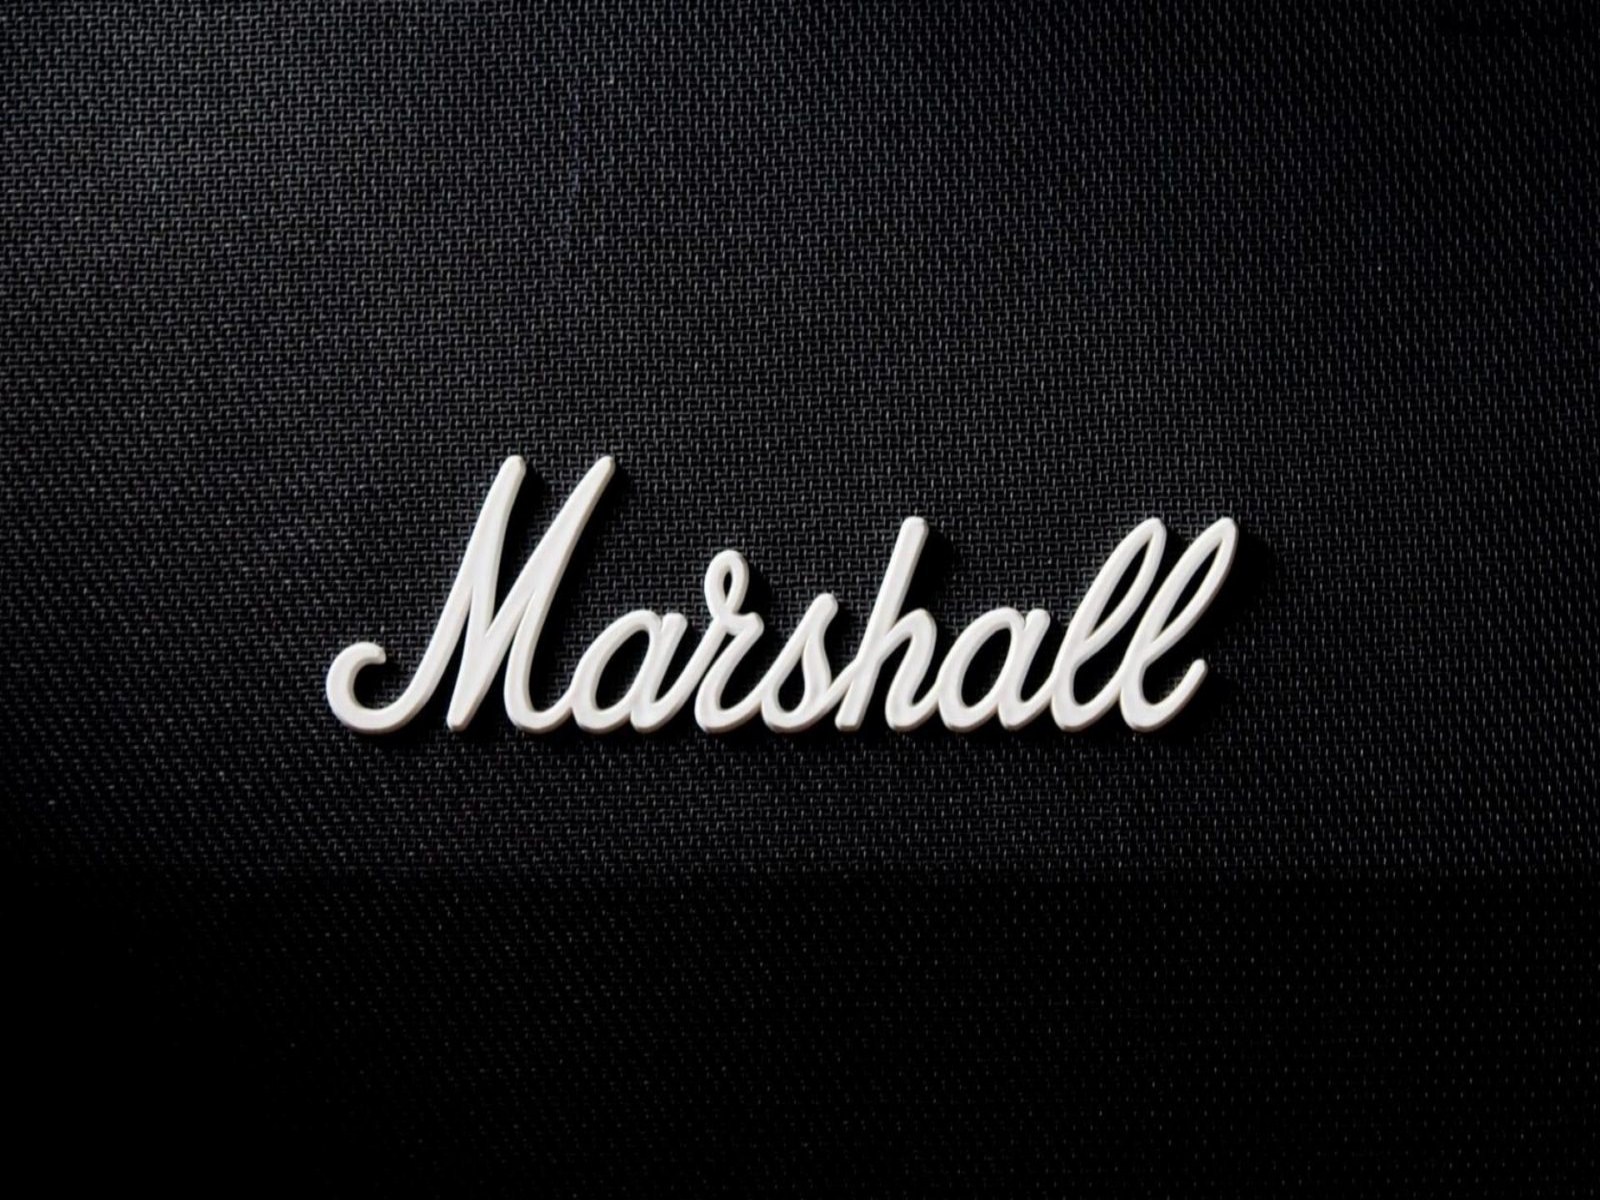 Marshall Amps Wallpaper Image